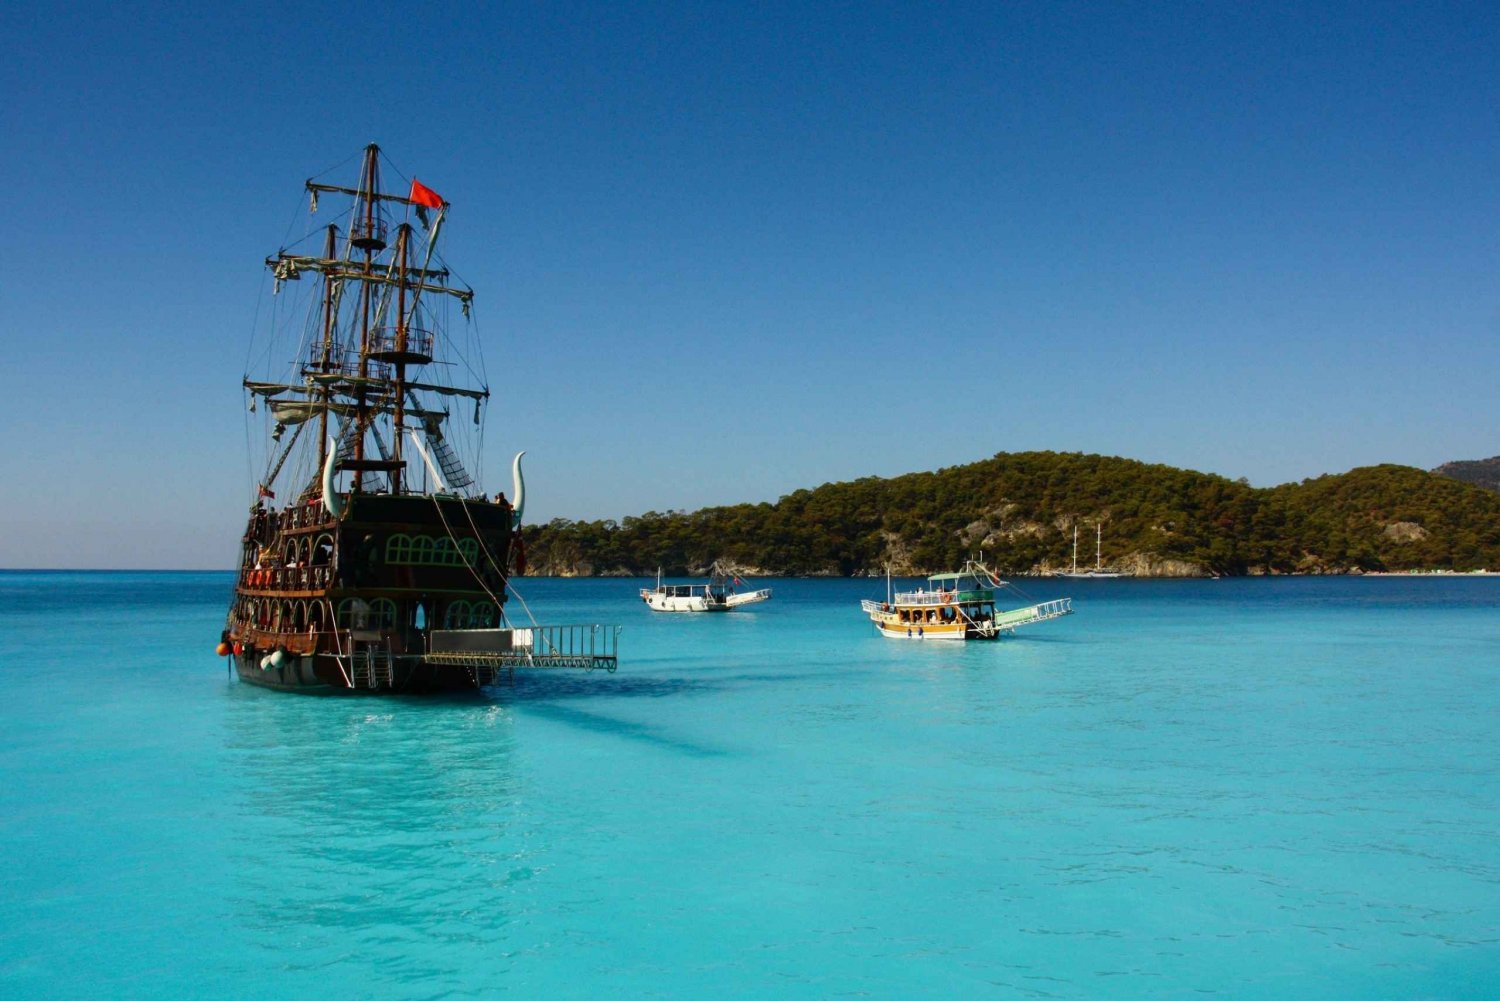 Ölüdeniz: Piratbåtcruise med svømmestopp og lunsj